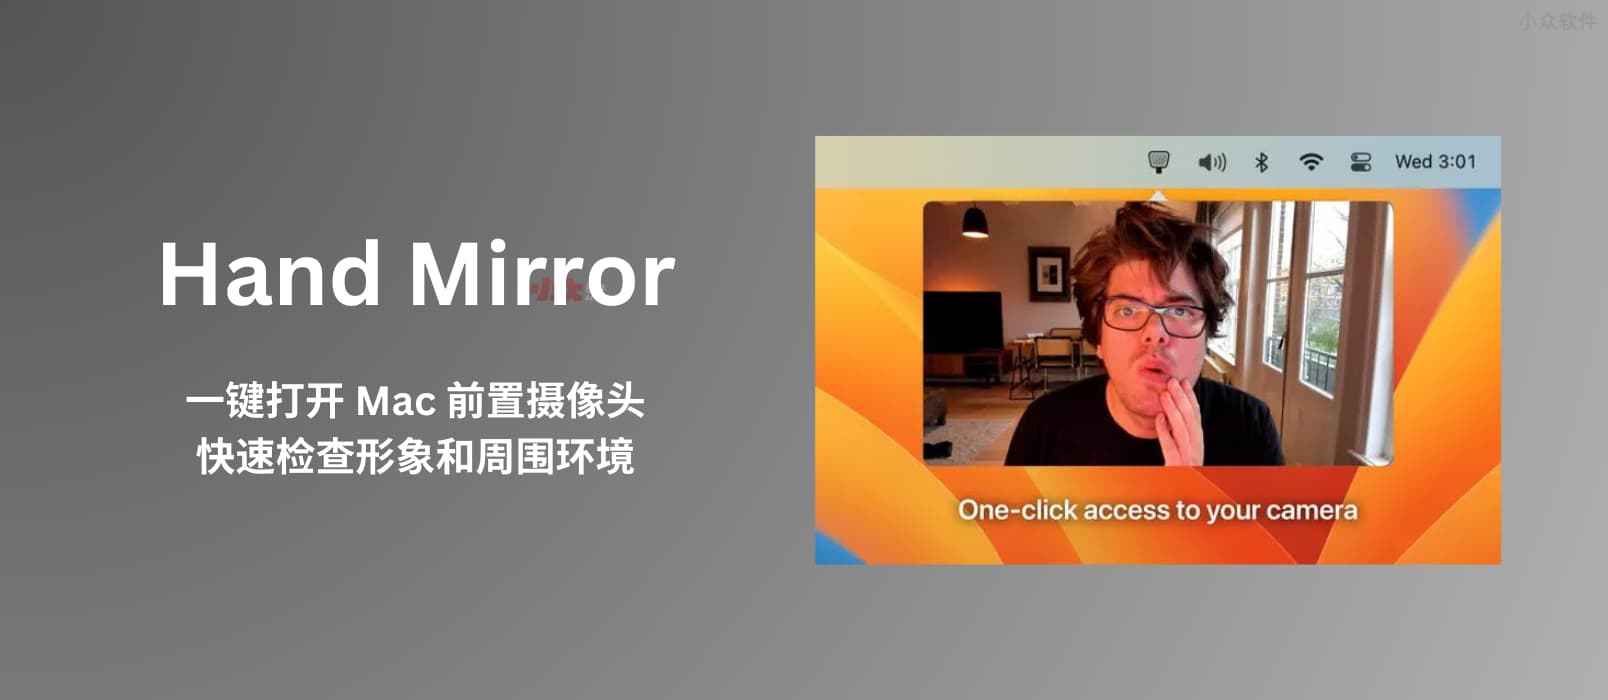 Hand Mirror - 一键打开 Mac 前置摄像头，快速检查形象和周围环境